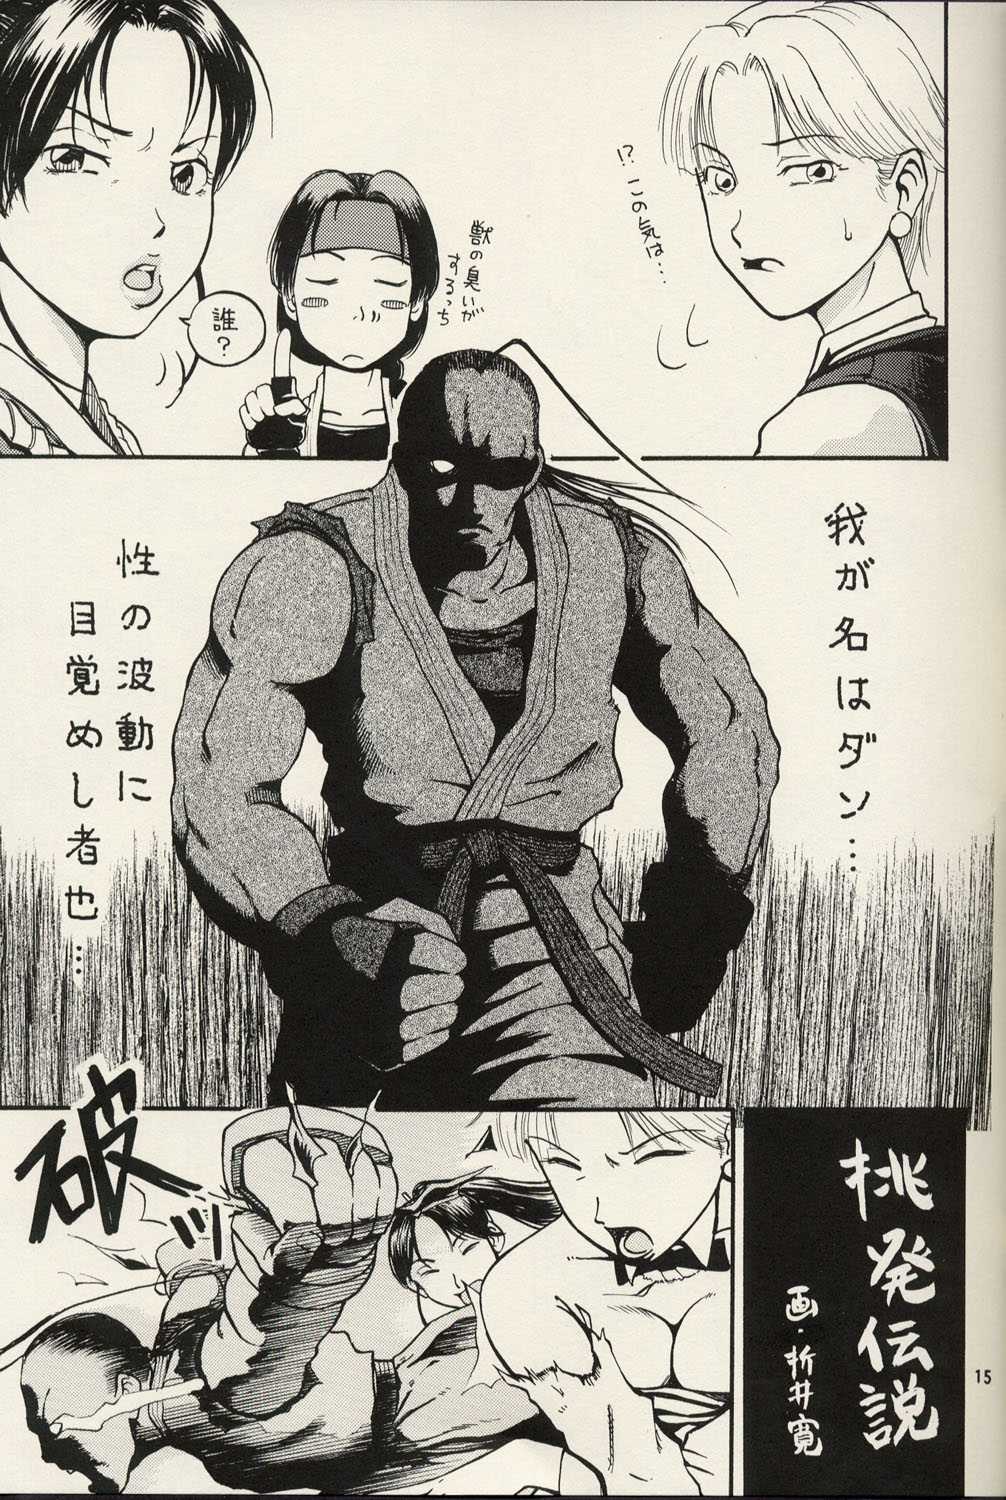 Toru Toru Vol. 2 (King of Fighters) 